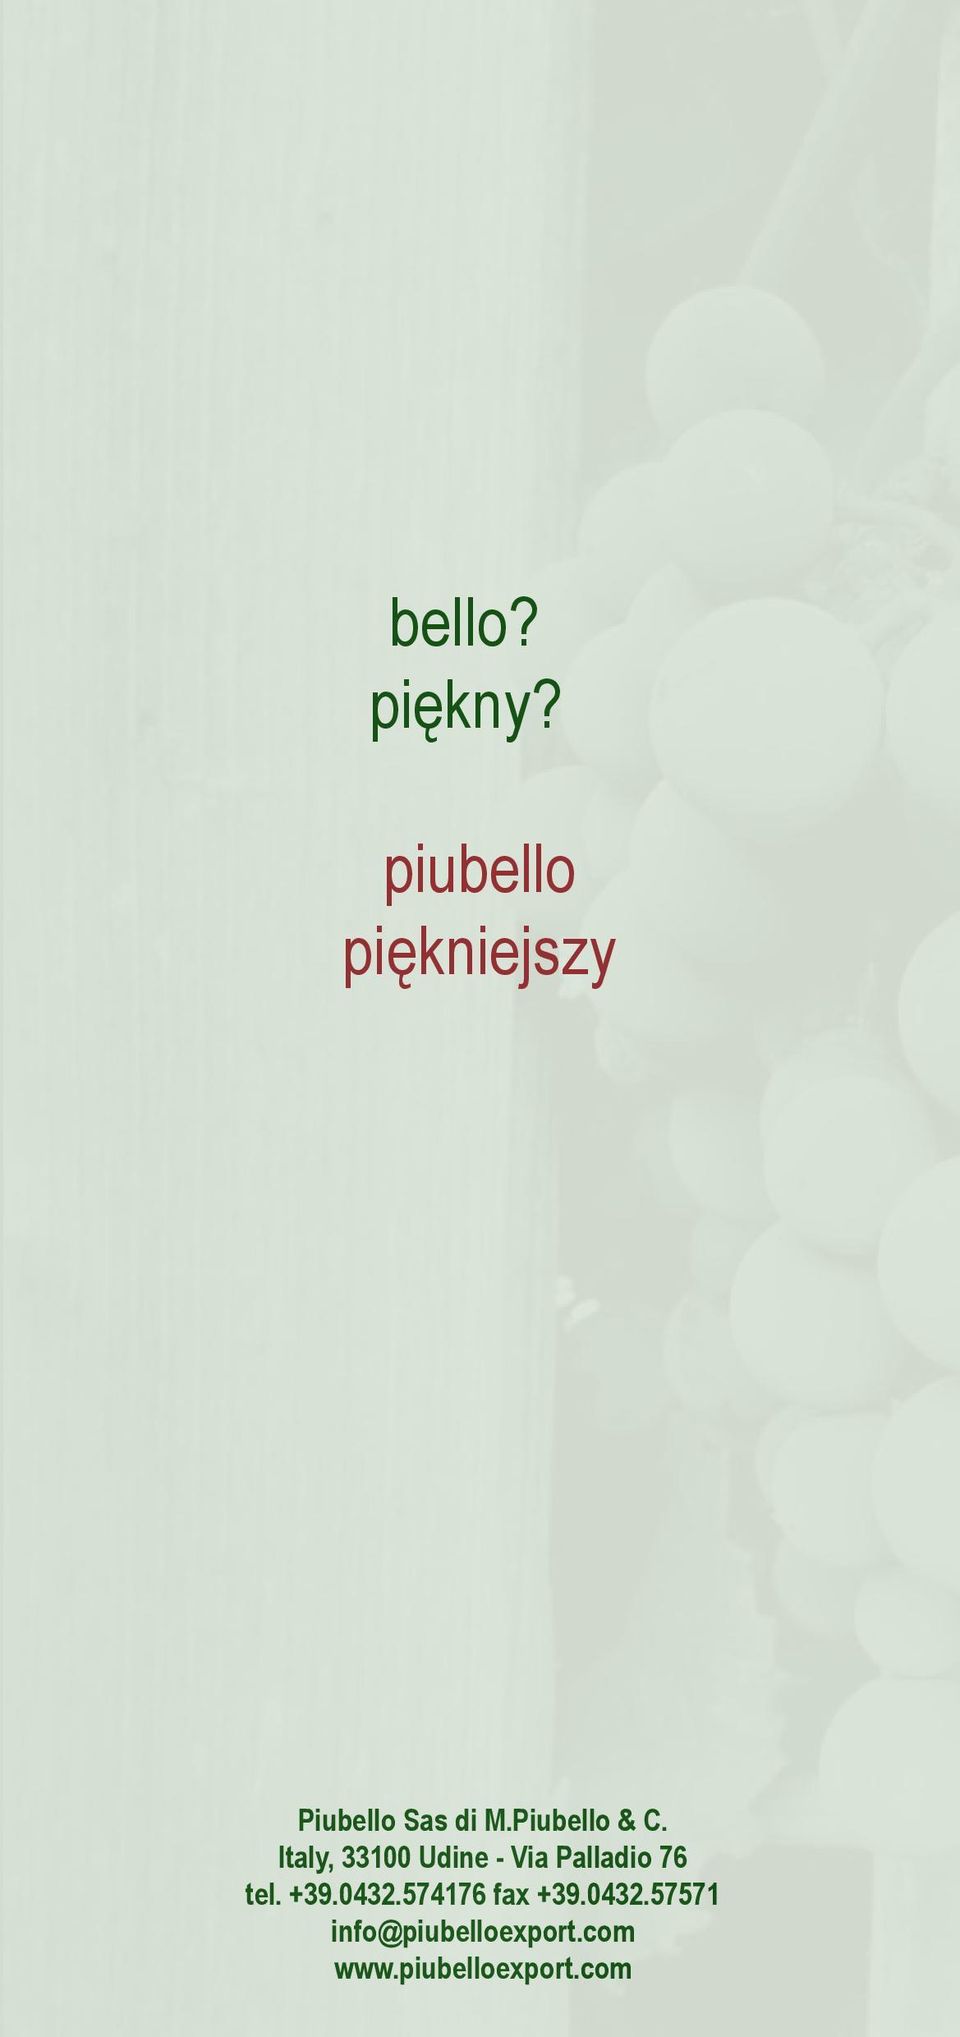 Piubello & C.